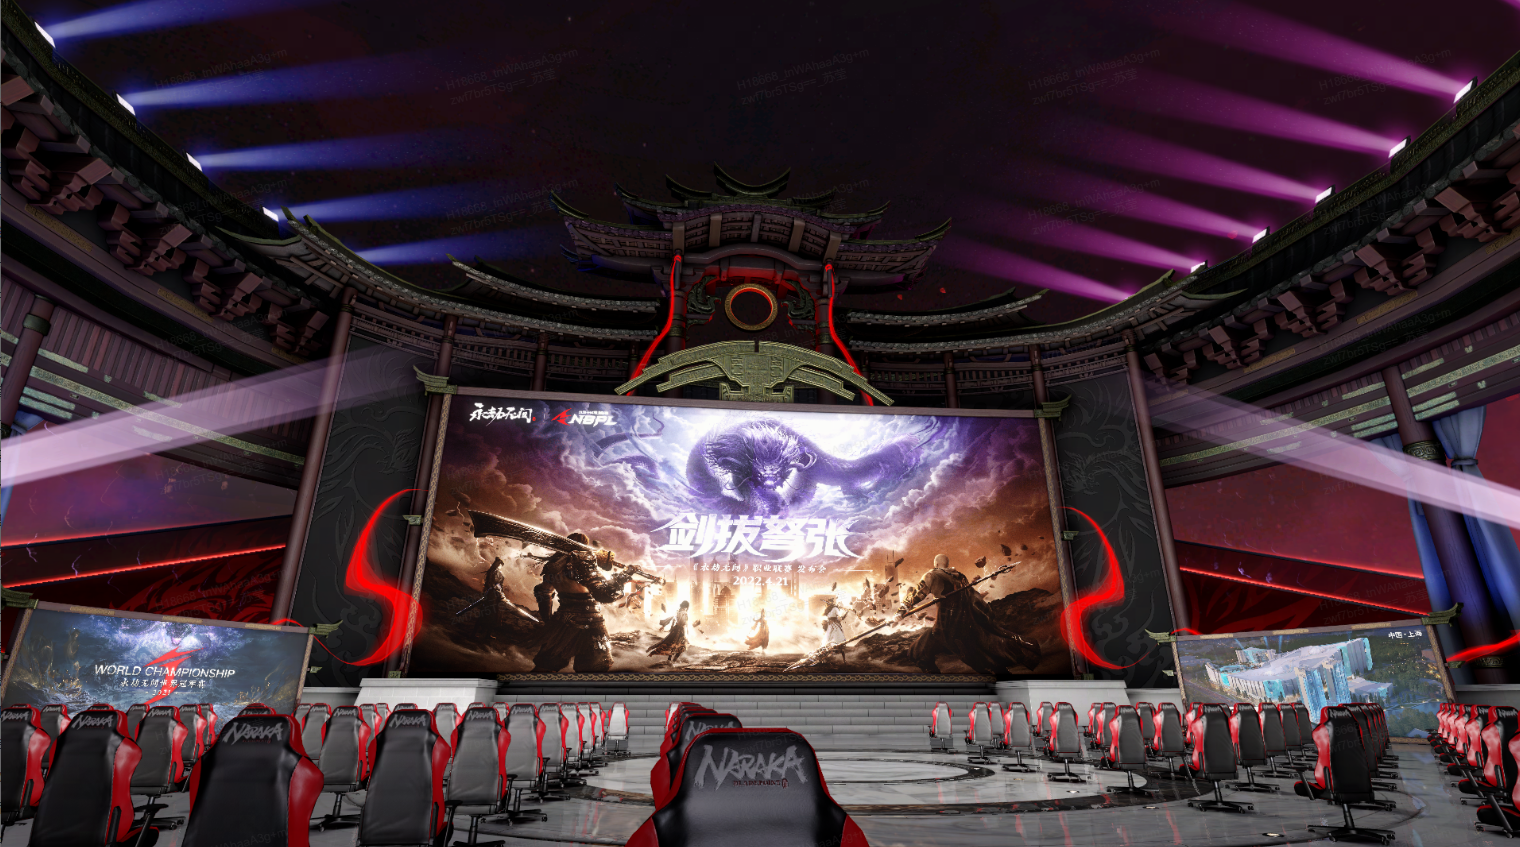 这是一张电子竞技比赛场馆的图片，舞台中央有大屏幕，观众席上排列着许多电脑椅，场馆设计融合了传统和现代元素。